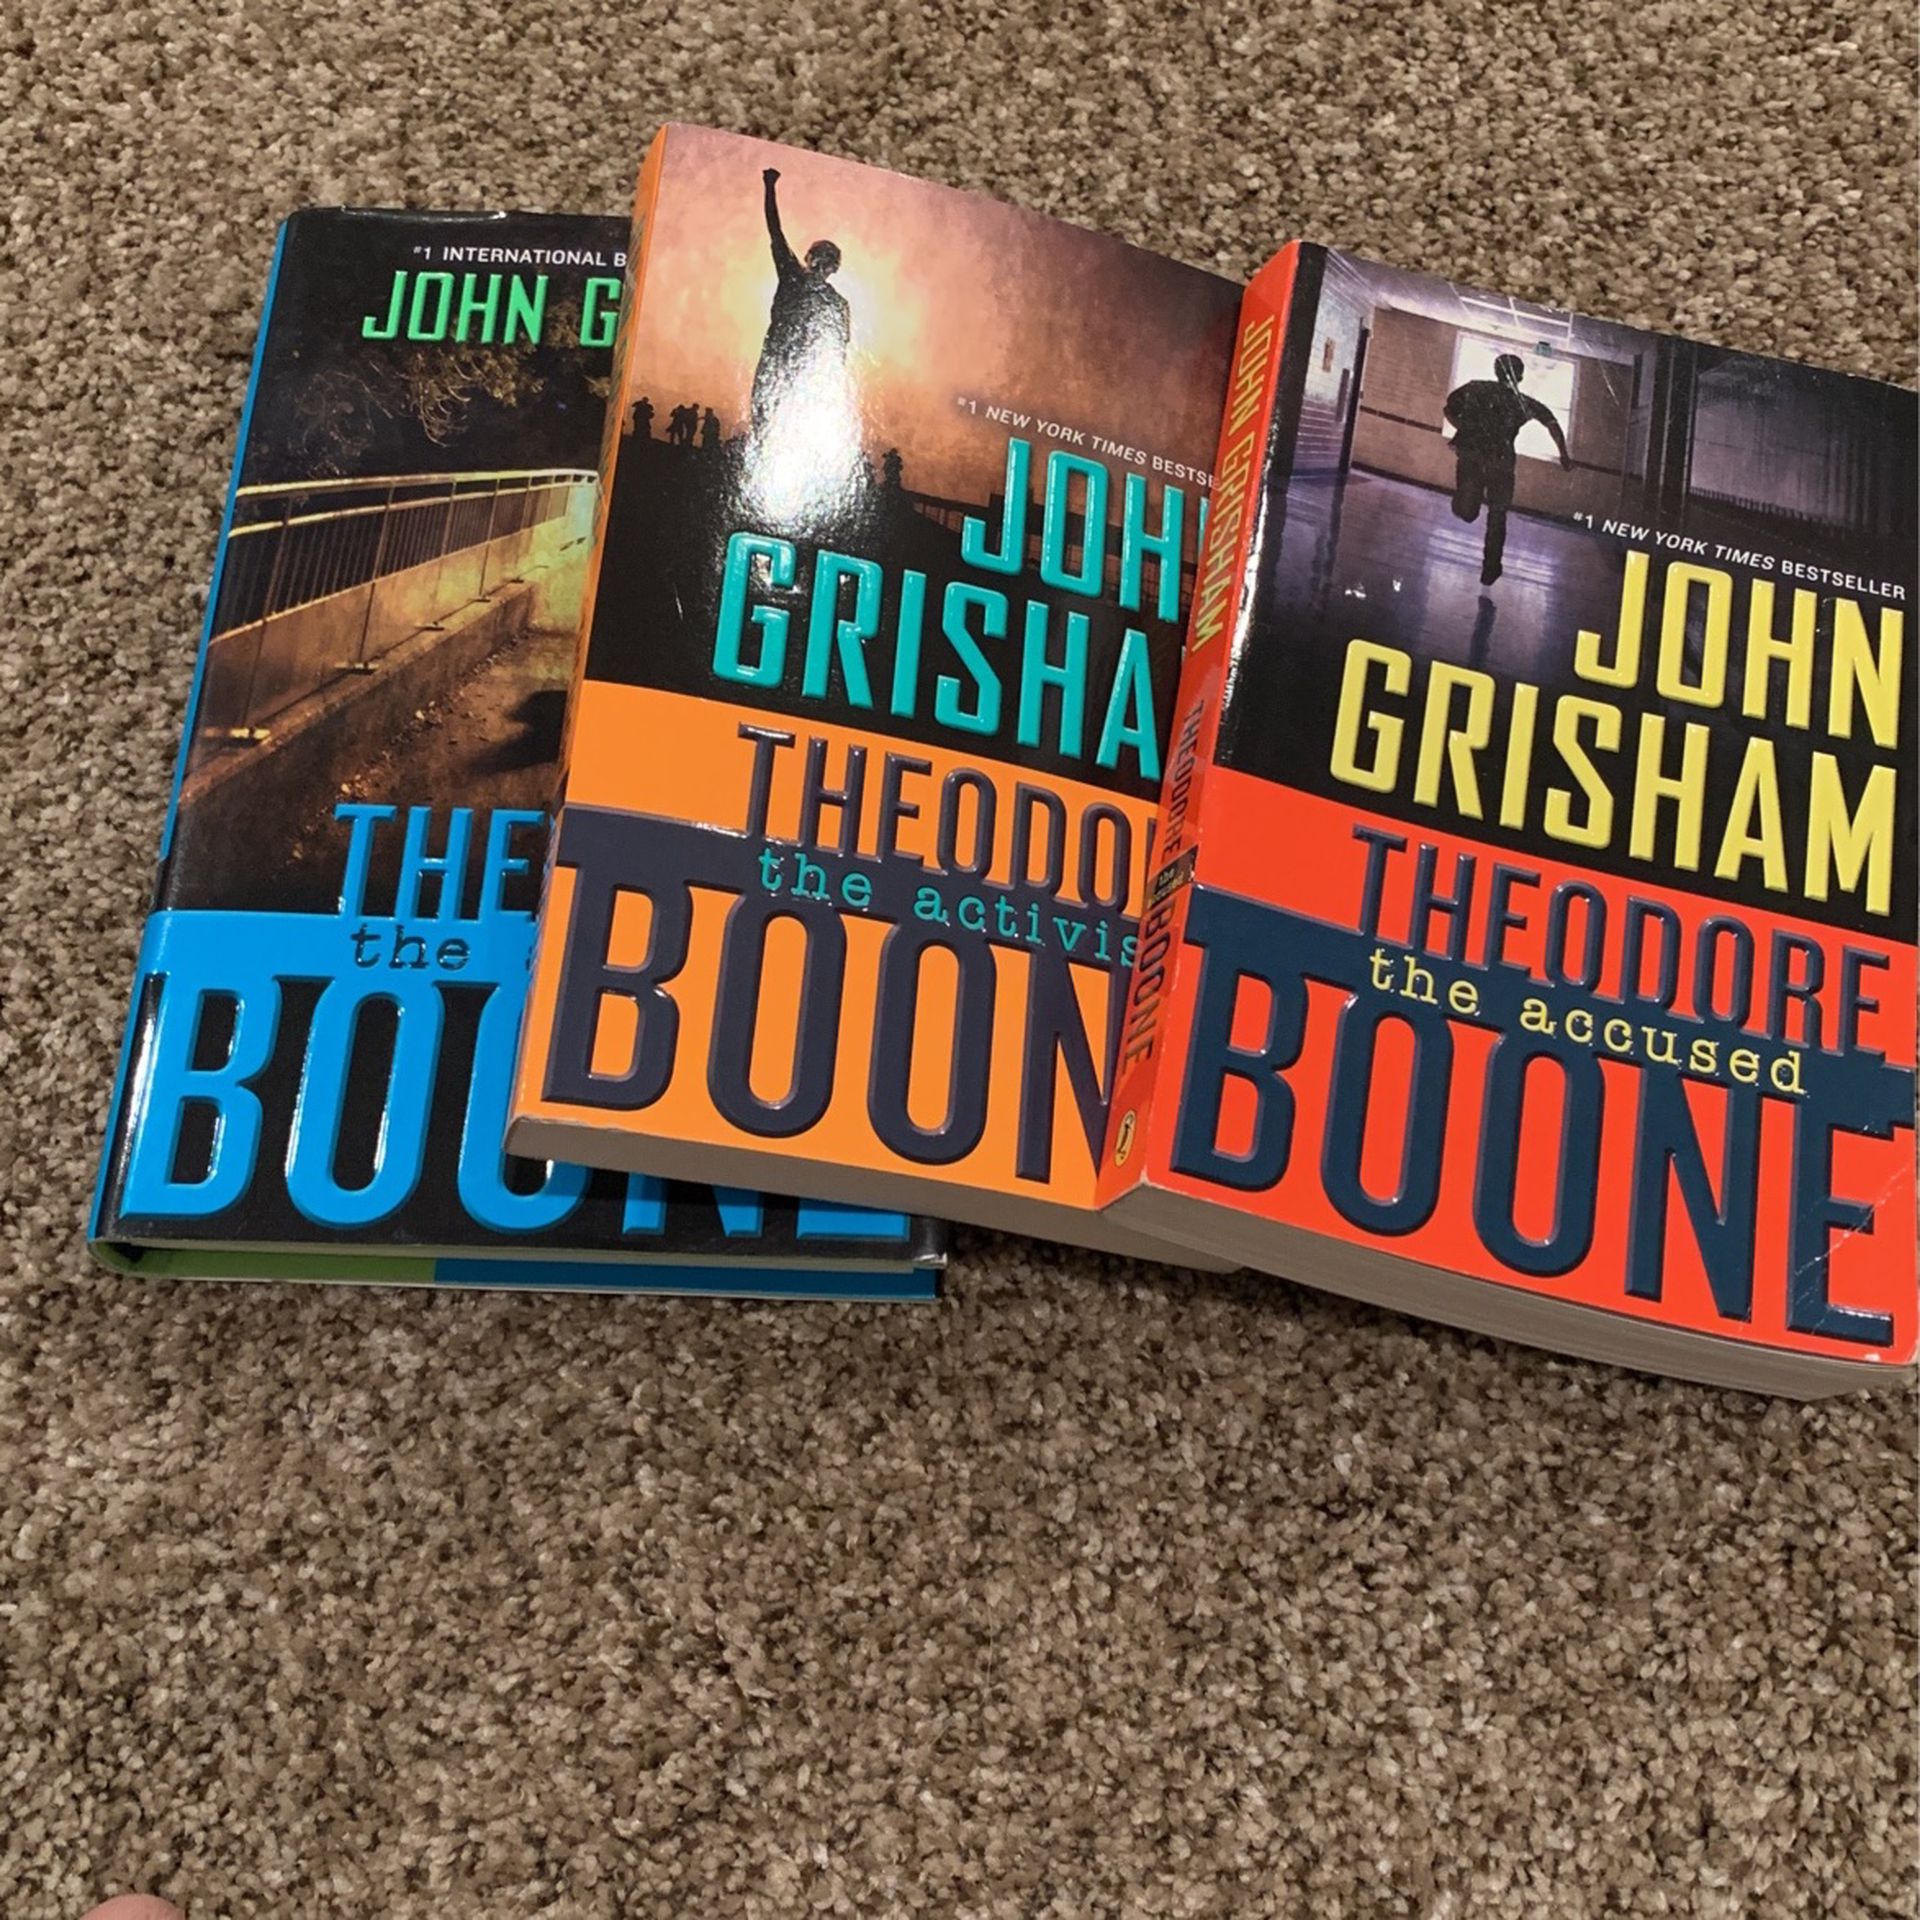 3 John Grisham books Theodore Boone